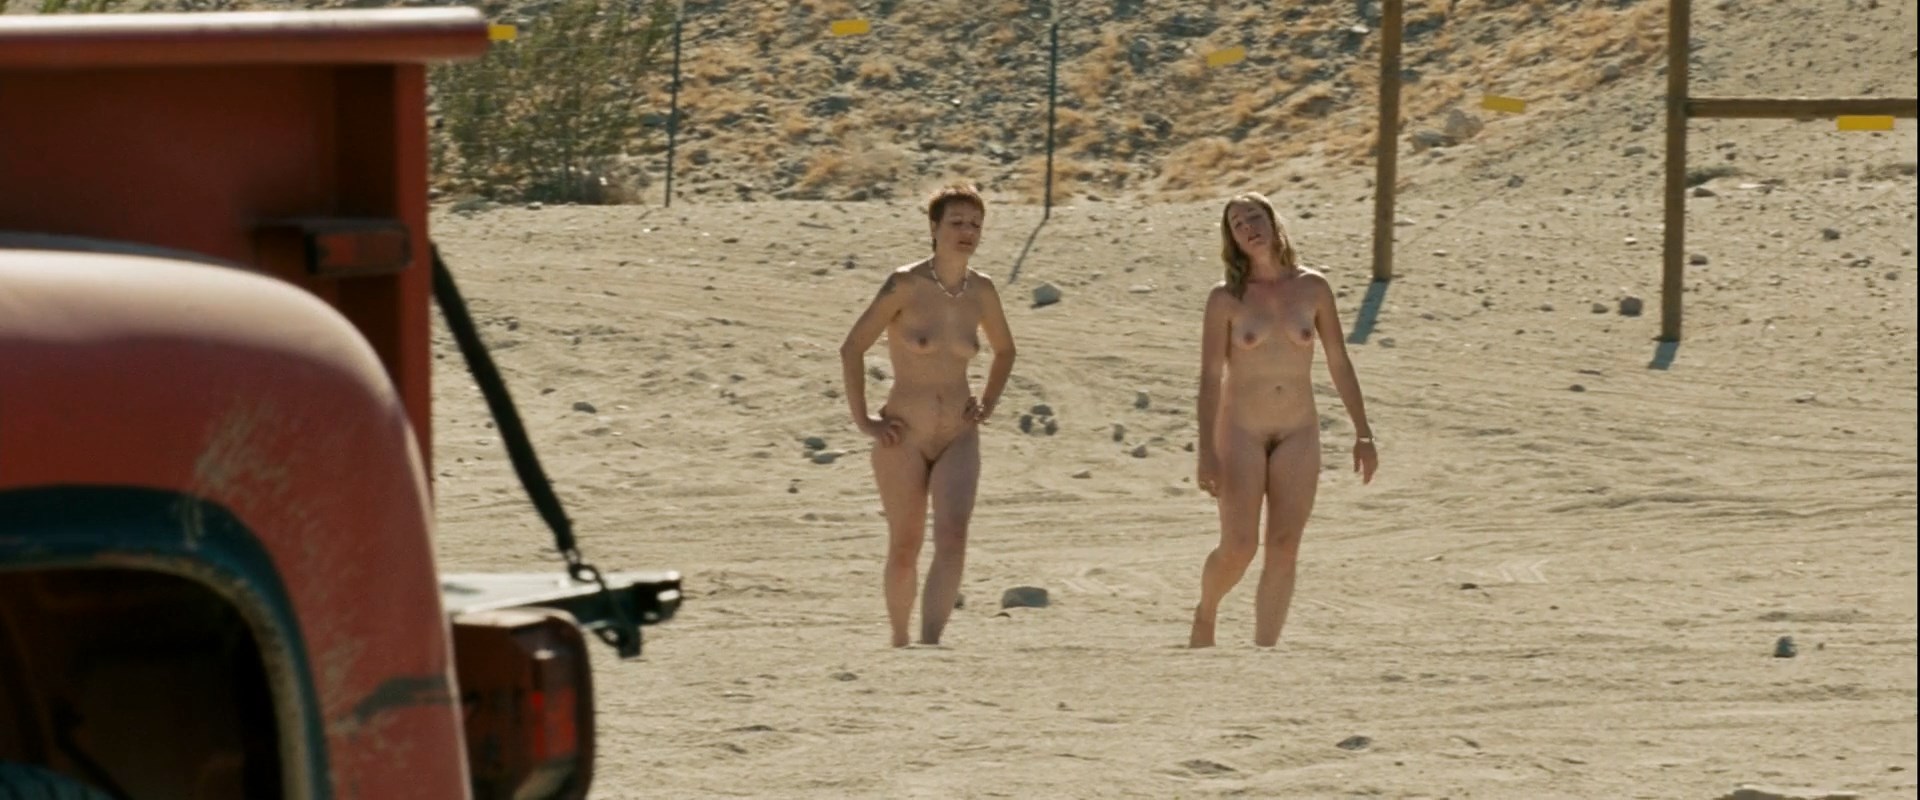 Kristen stewart nude movie